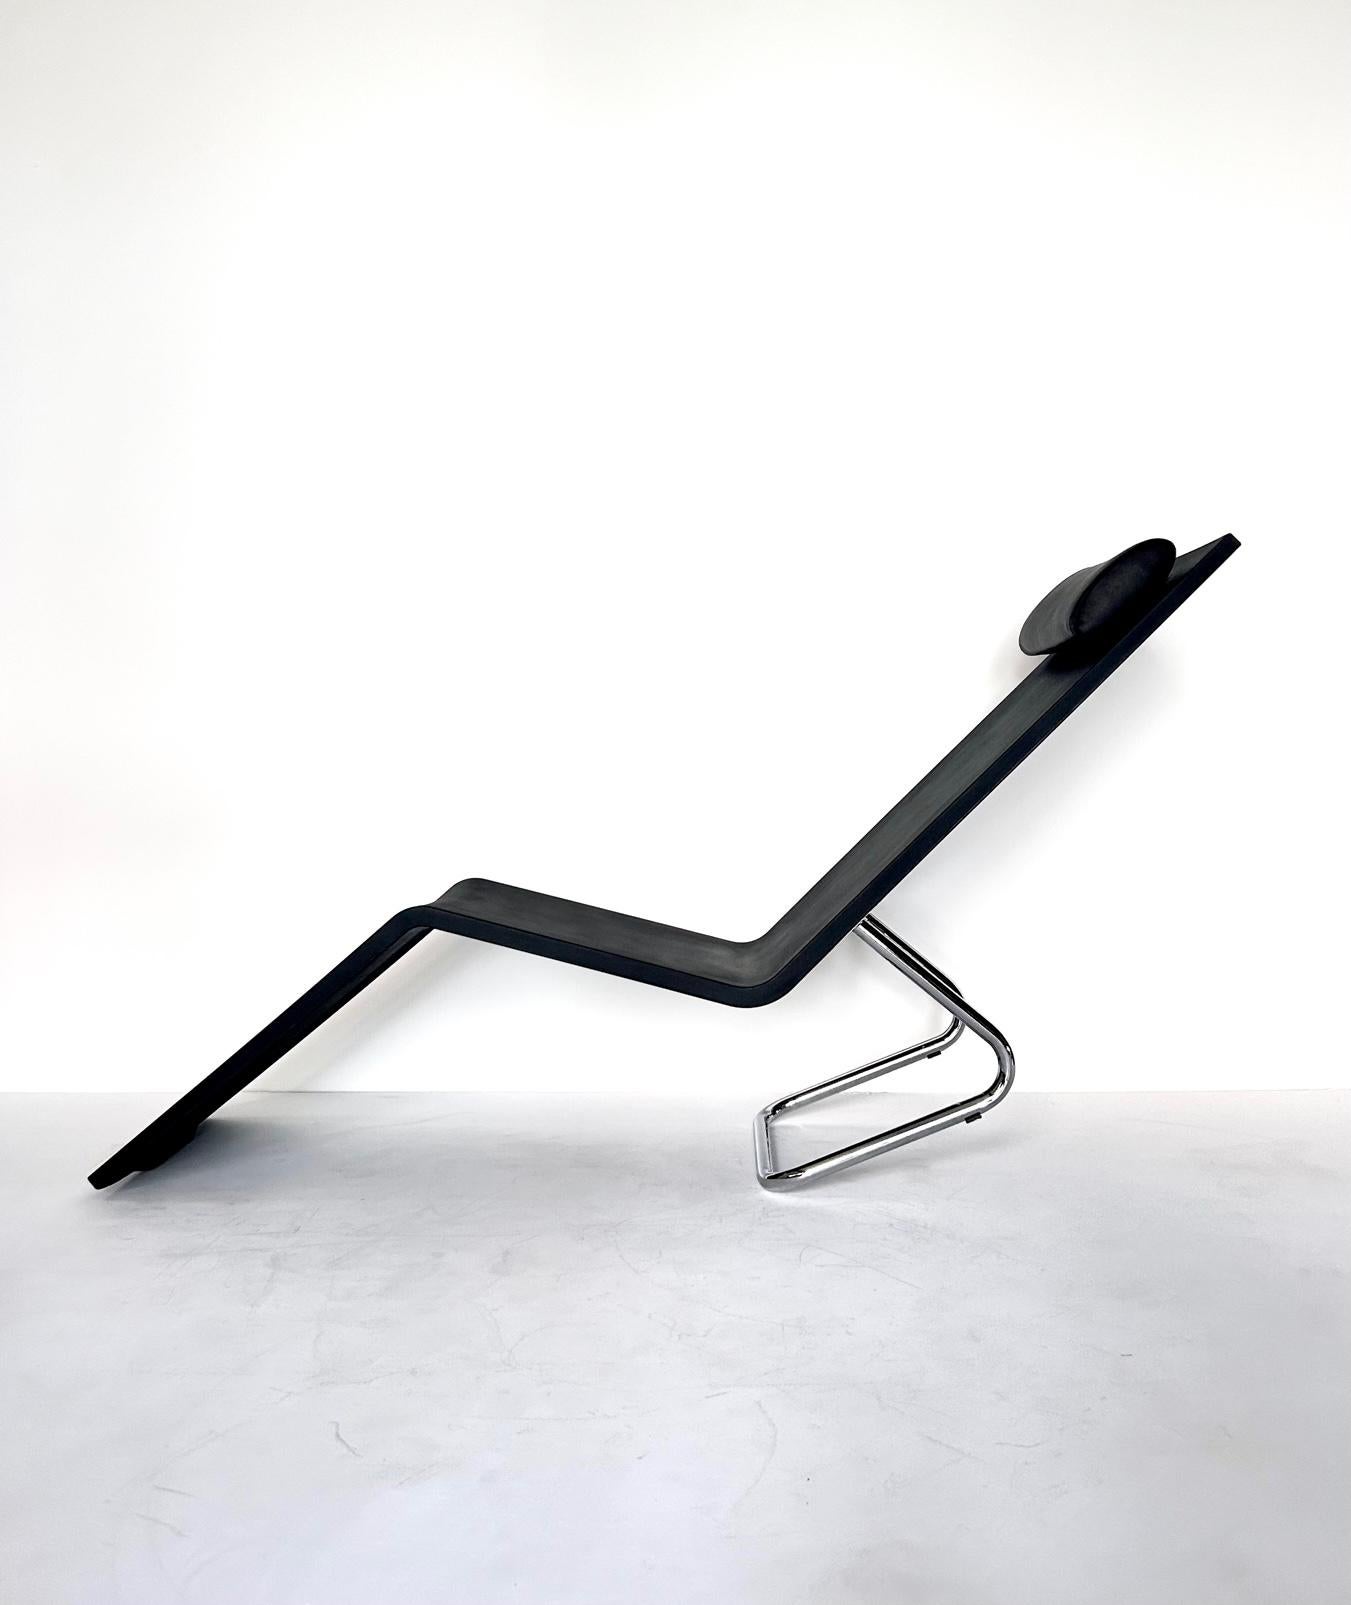 Chaise longue minimaliste MVS de Maarten Van Severen pour Vitra, années 1990

La chaise longue MVS a été conçue par Maarten Van Severen en polyuréthane.

Un cadre ingénieux permettant de passer de la position assise à la position allongée.

Coussin